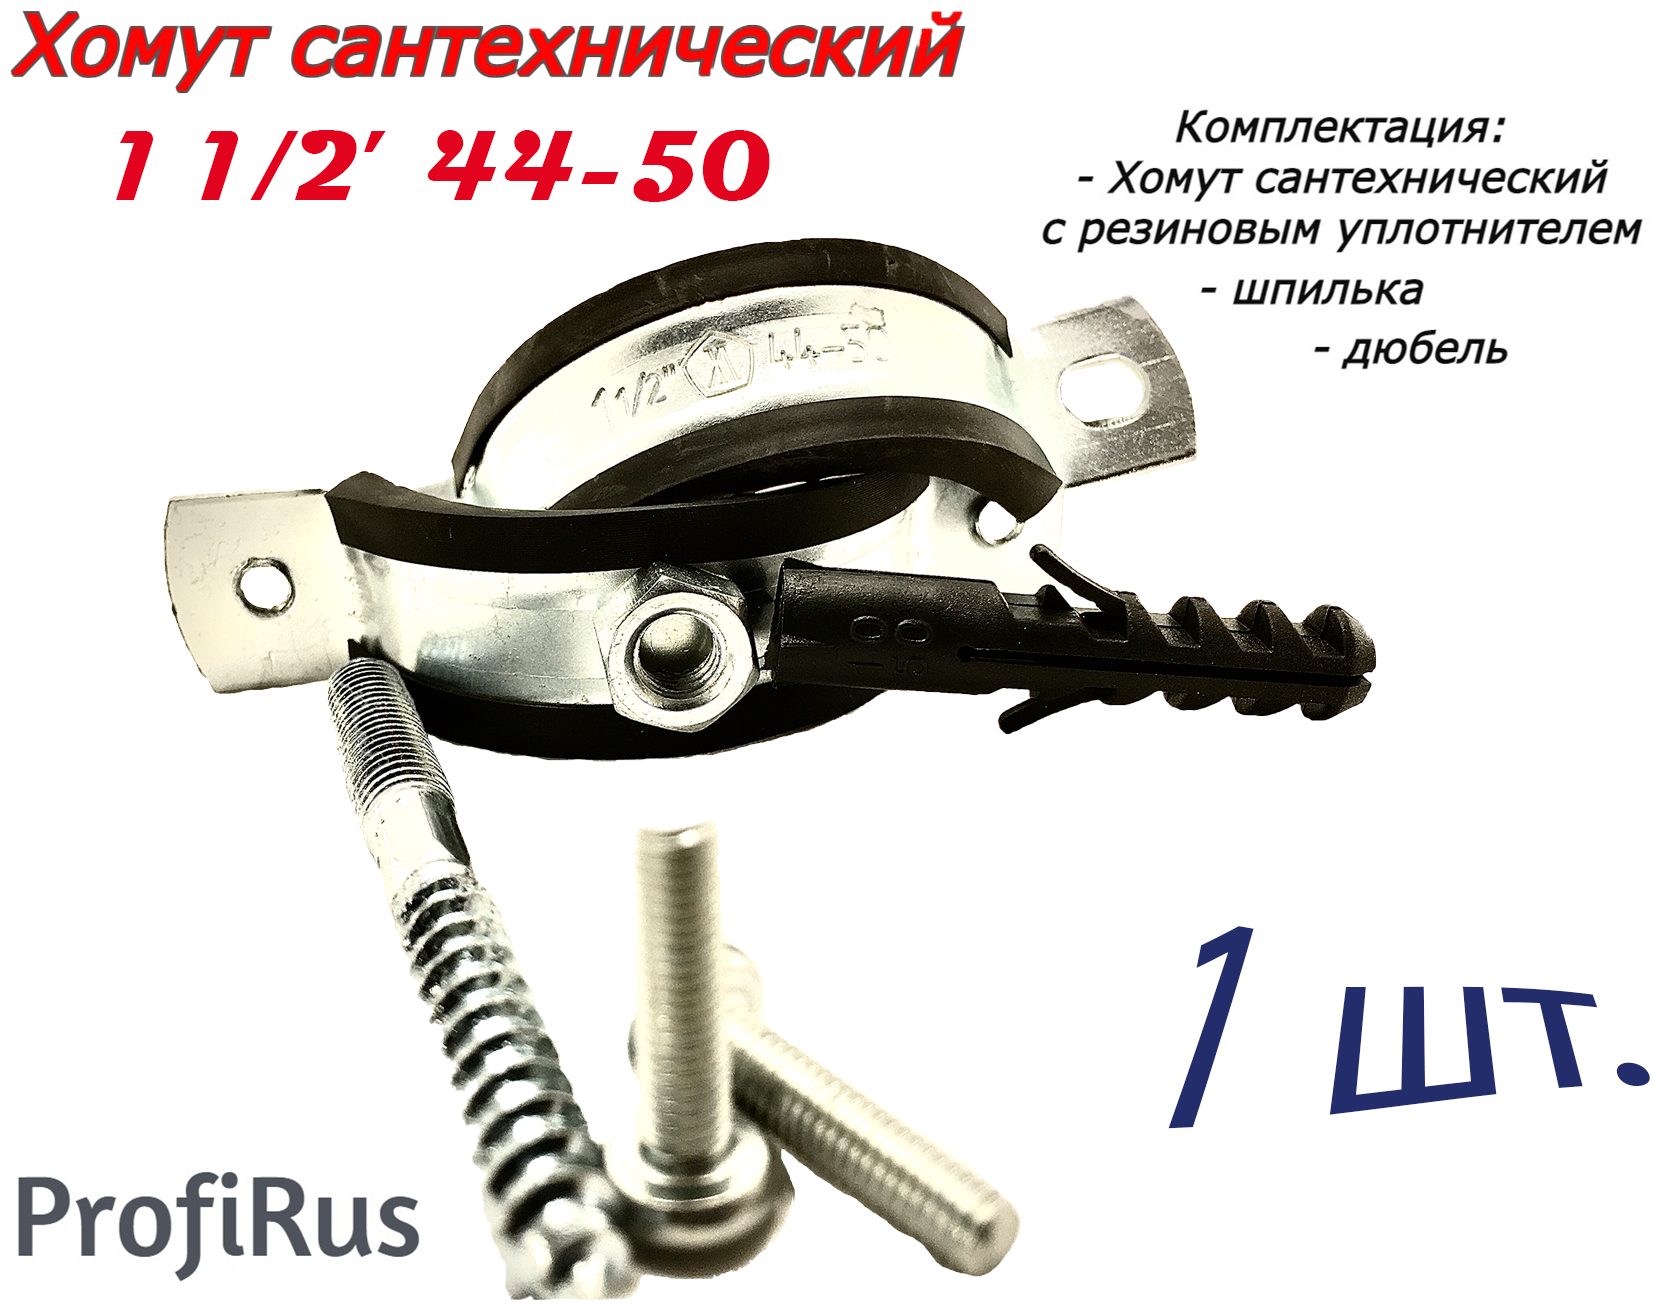 Хомут сантехнический D1 1/2" 44-50 (1 шт.) для труб с резиновым уплотнением шпилькой и дюбелем